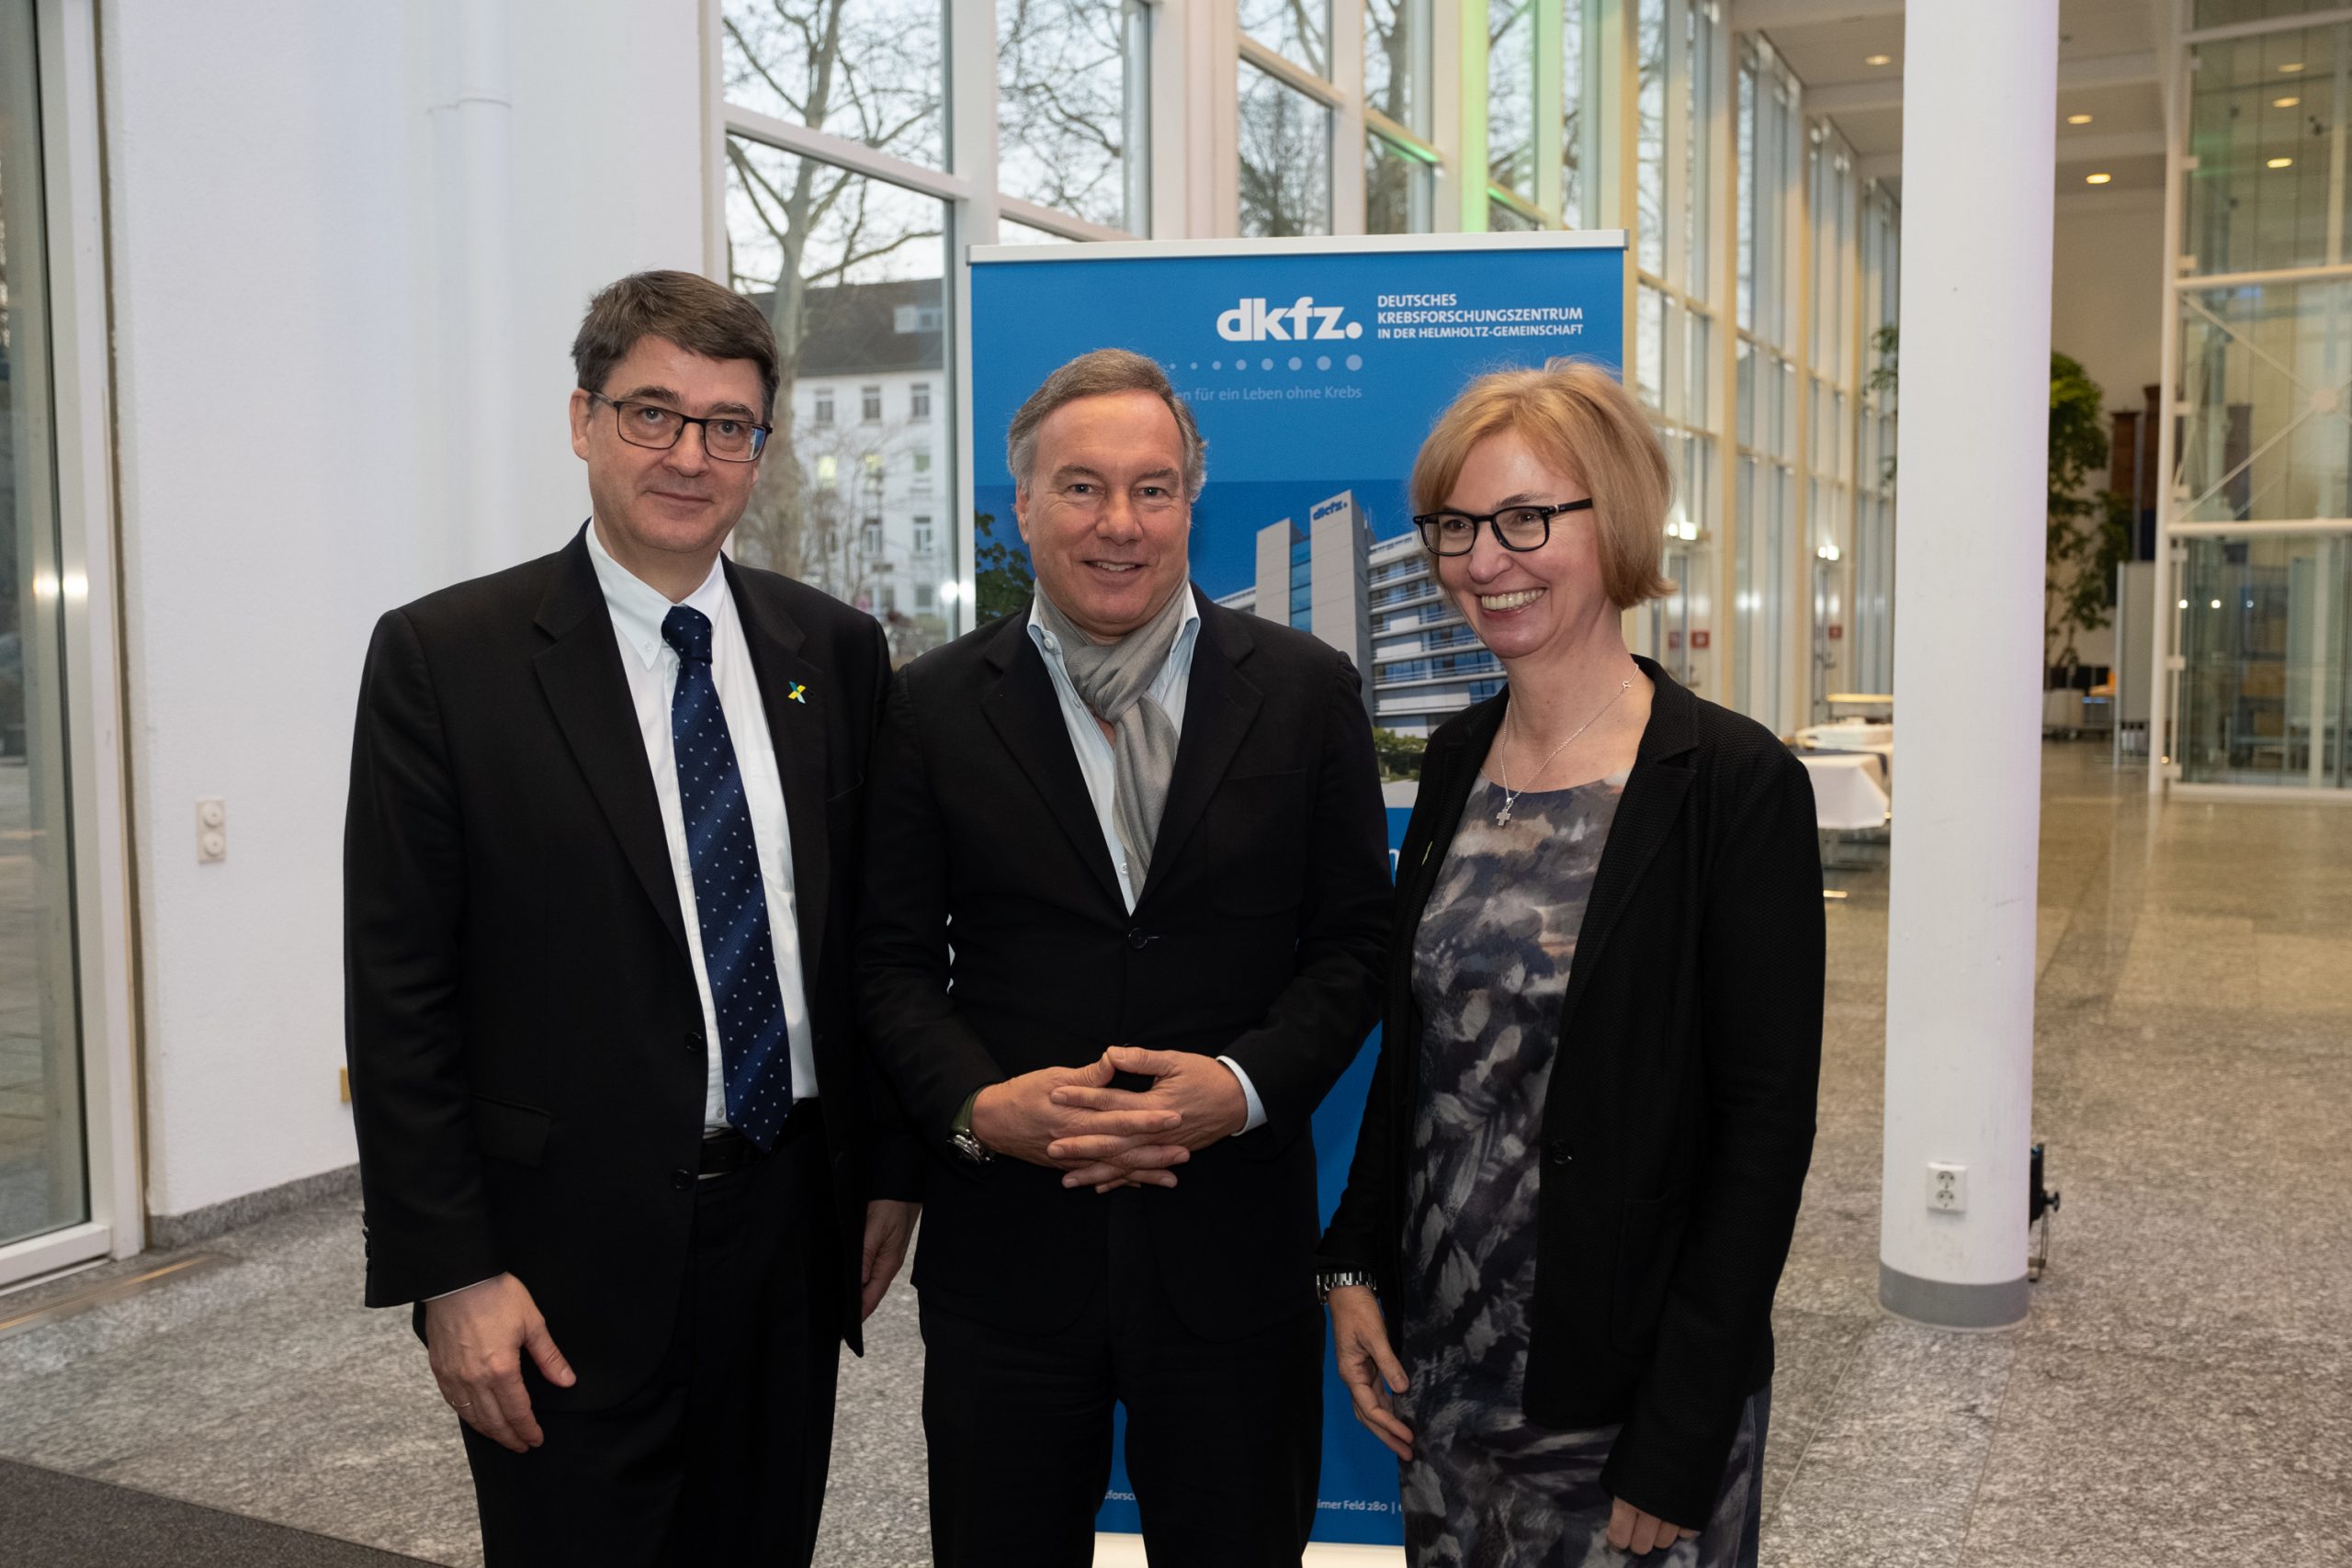 DKFZ-Vorstand Prof. Dr. med. Michael Baumann, Nico Hofmann und Ursula Weyrich